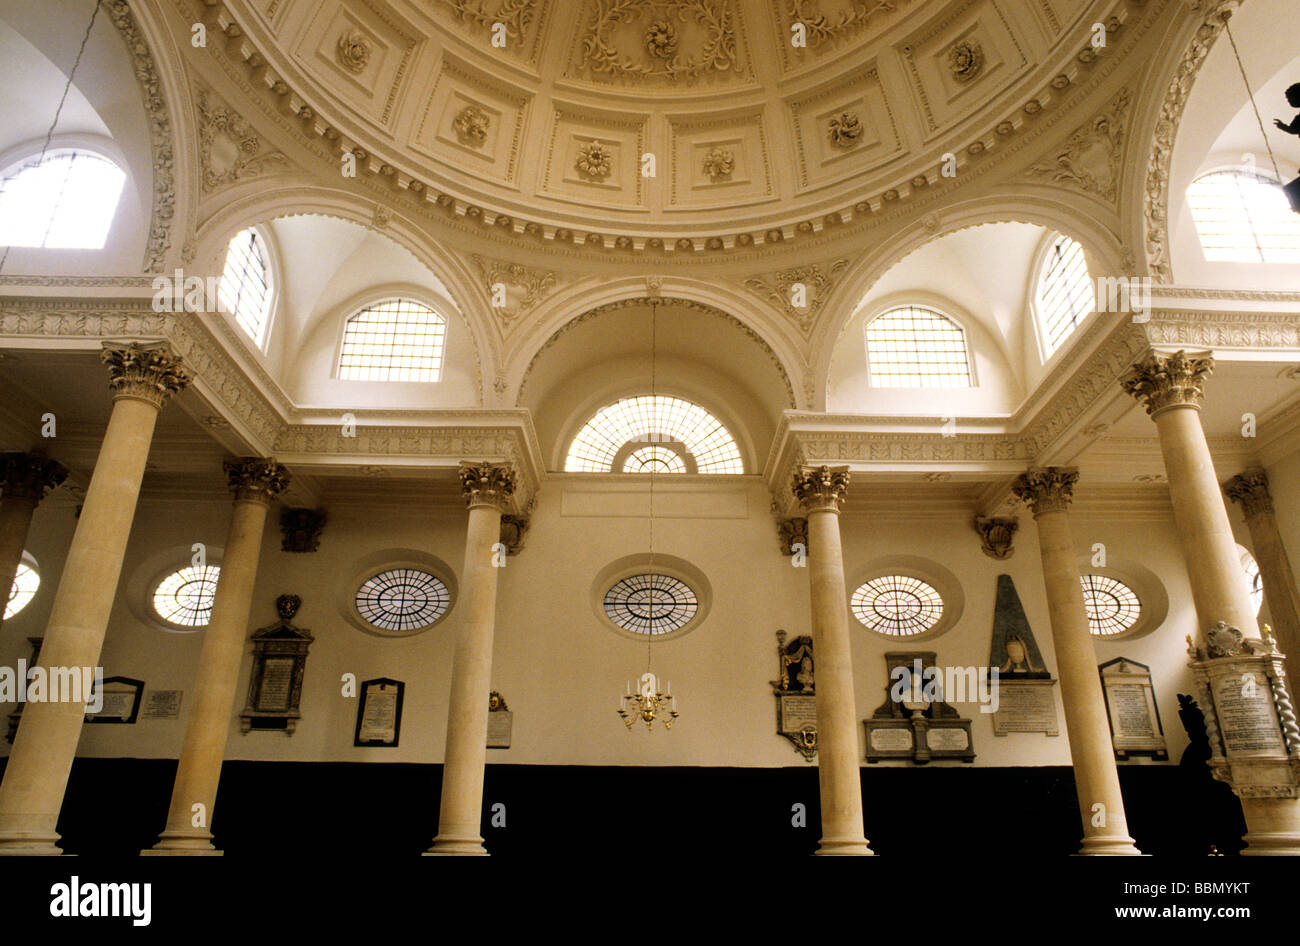 St Stephen Walbrook intérieur de l'église Ville de London 17 centrury dôme architecture anglaise, Sir Christopher Wren architecte Banque D'Images